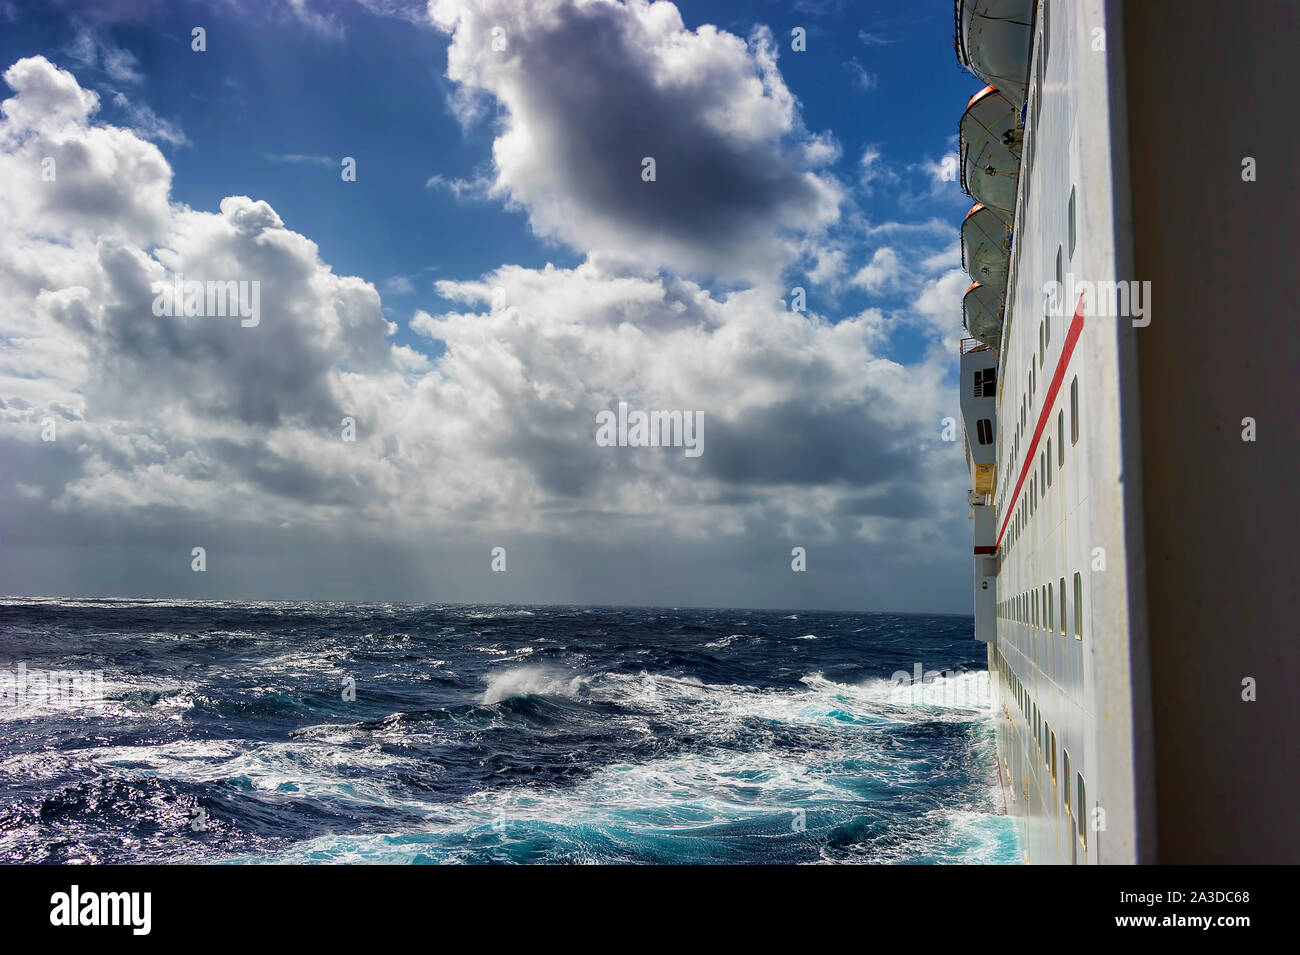 Stürmischen Himmel und Wasser in dieser Ansicht von einem Kreuzfahrtschiff Kabine Balkon. Stockfoto